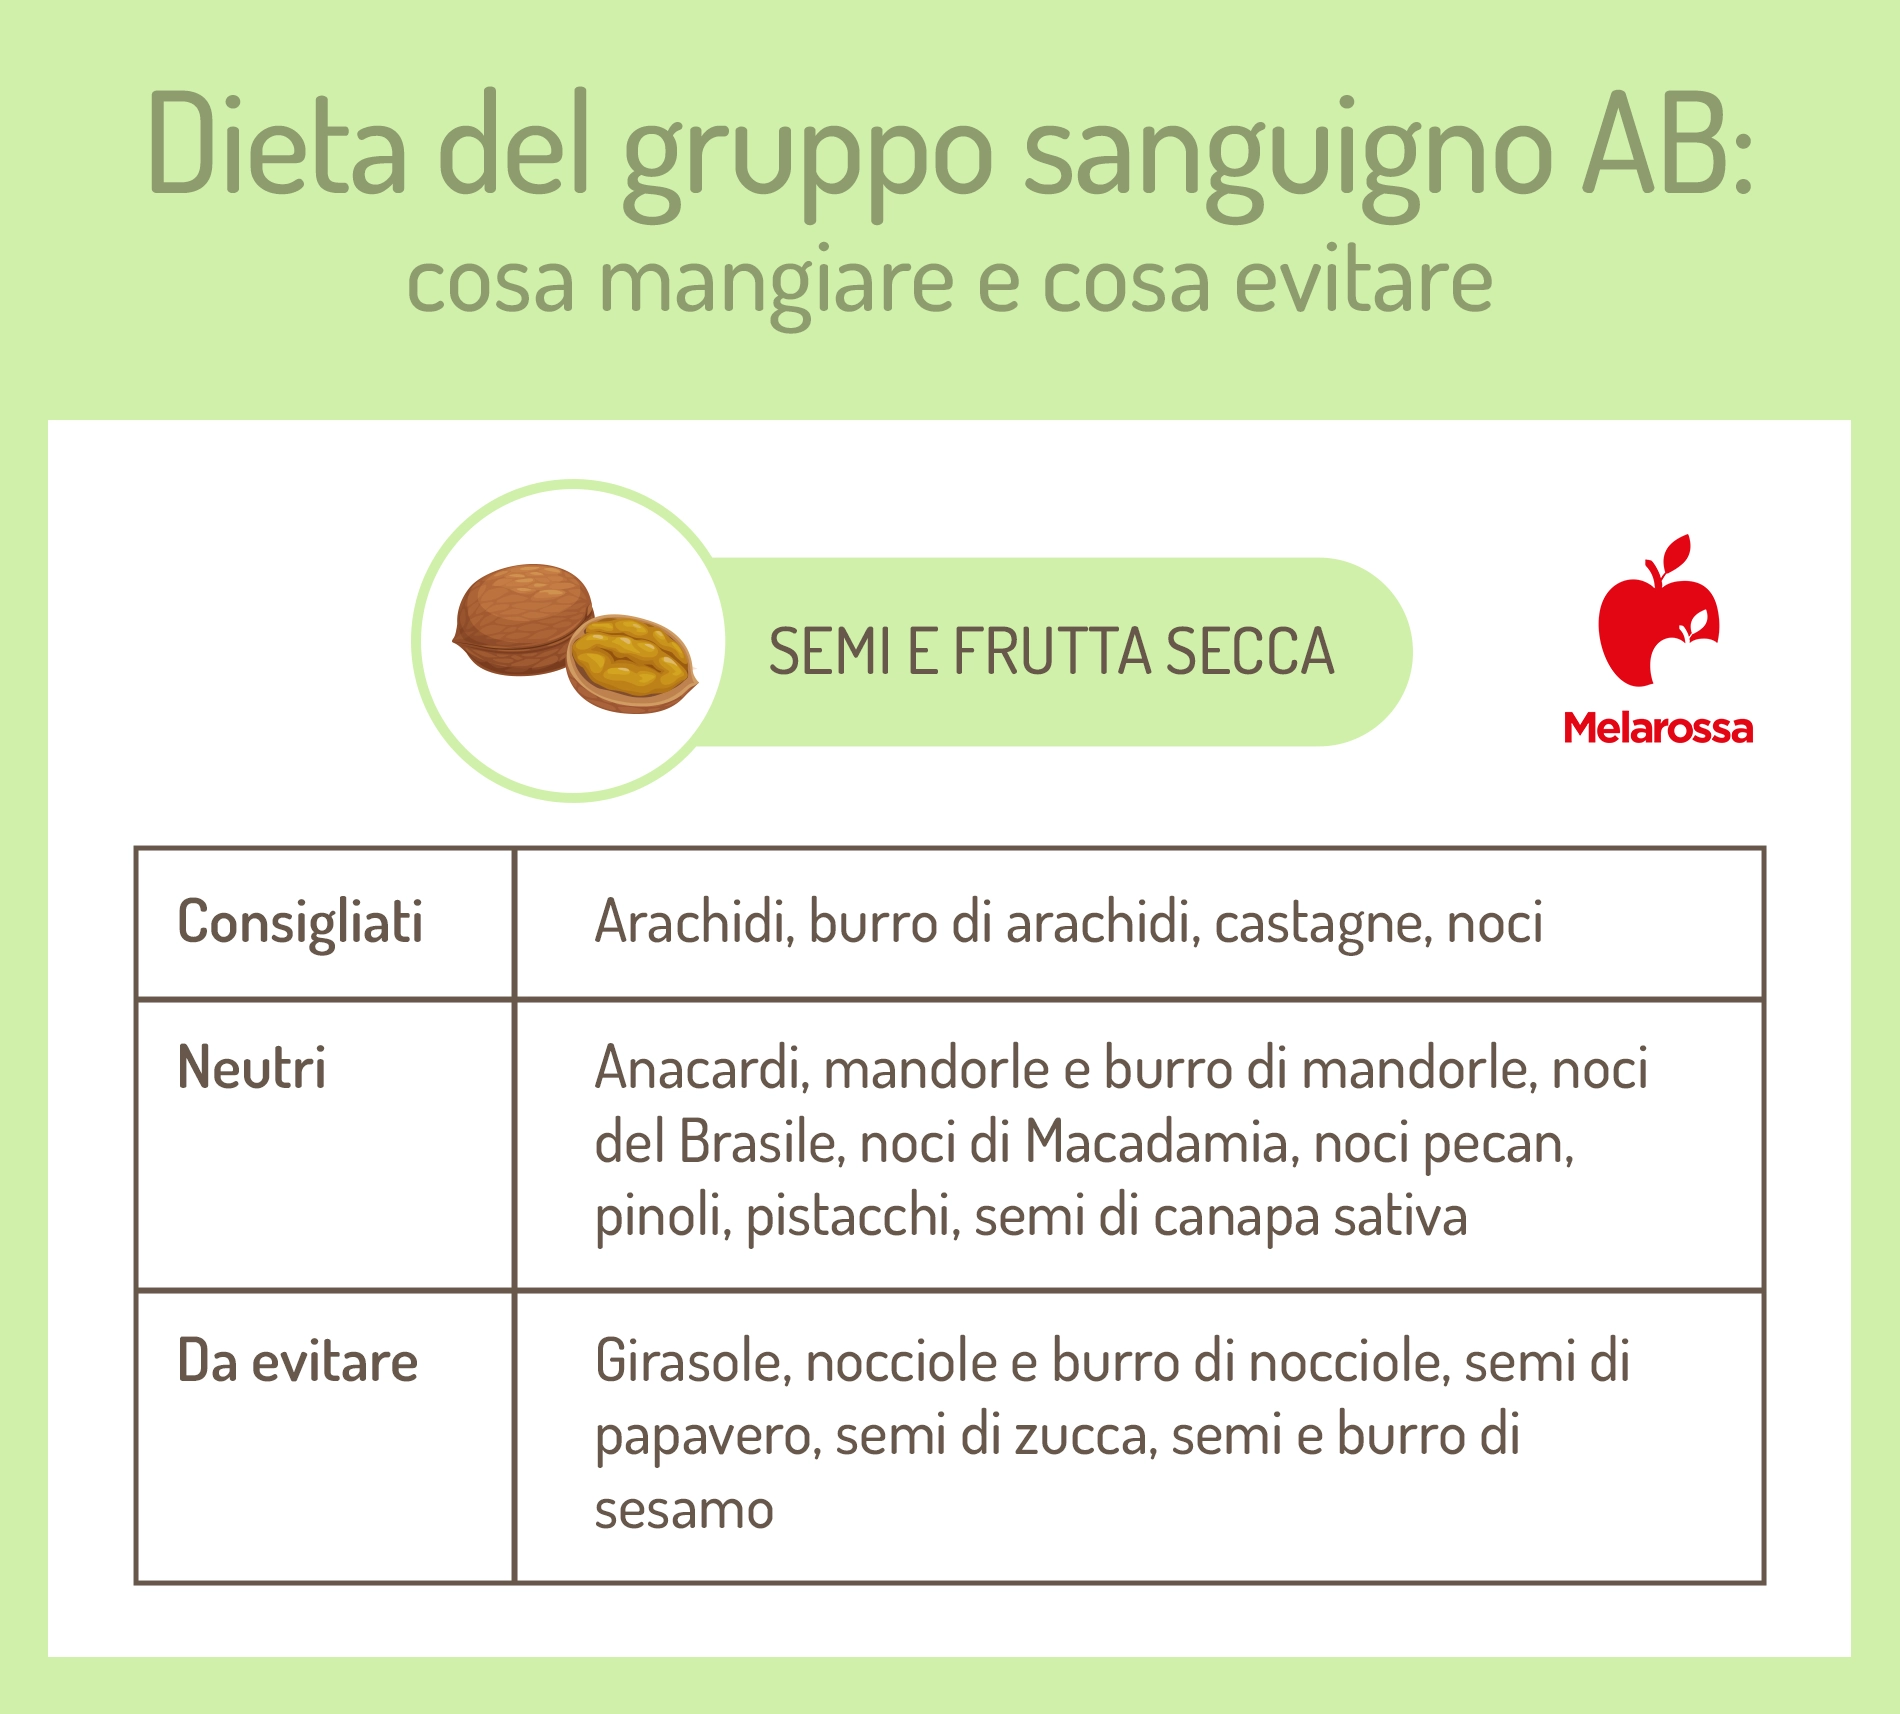 dieta del gruppo sanguigno B: semi e frutta secca